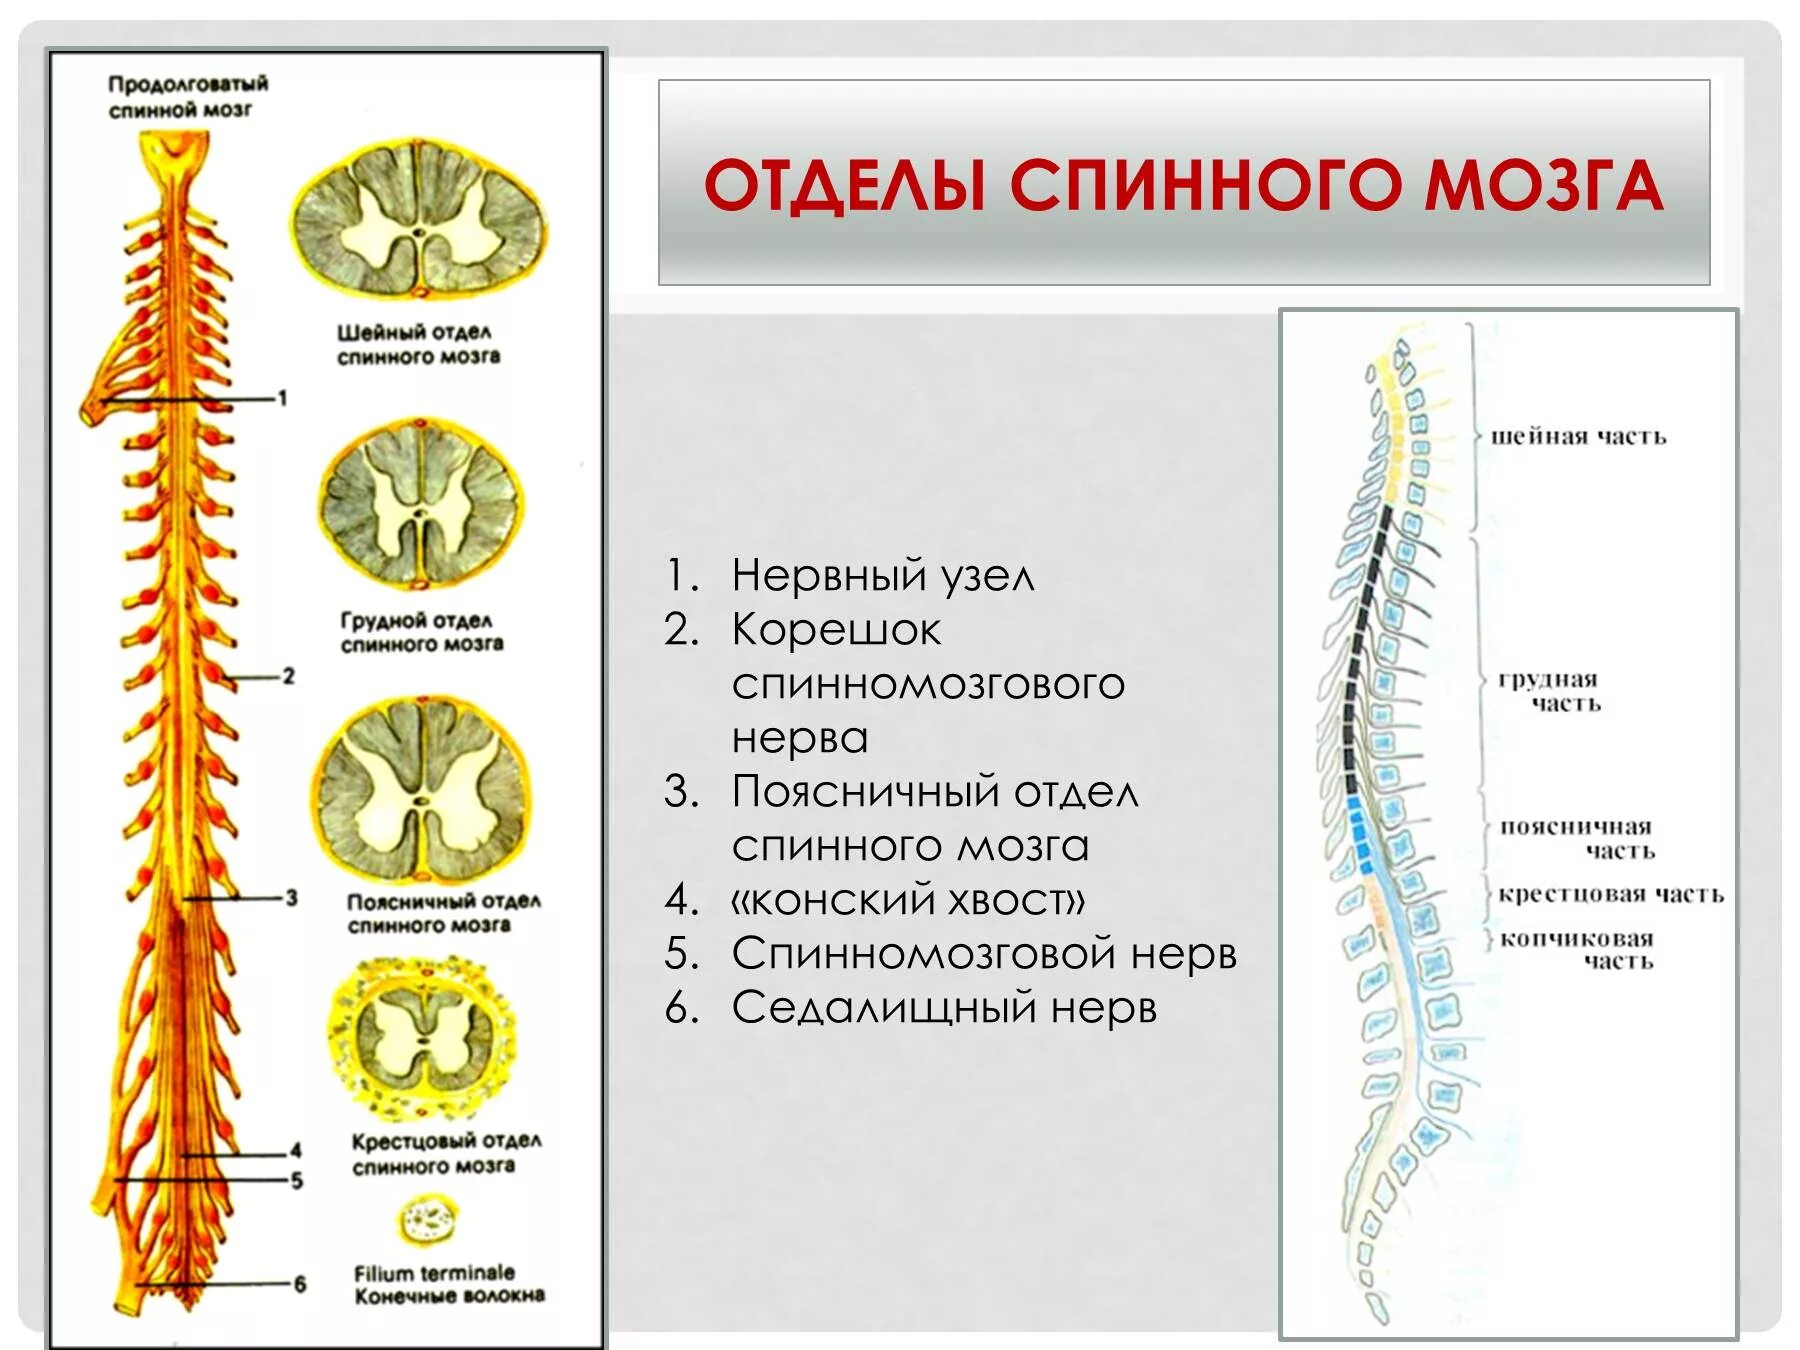 Дайте характеристику спинного мозга. Перечислите отделы спинного мозга. Отделы спинного мозга строение и функции. Спинной мозг шейный отдел анатомия. Шейный отдел спинного мозга строение.